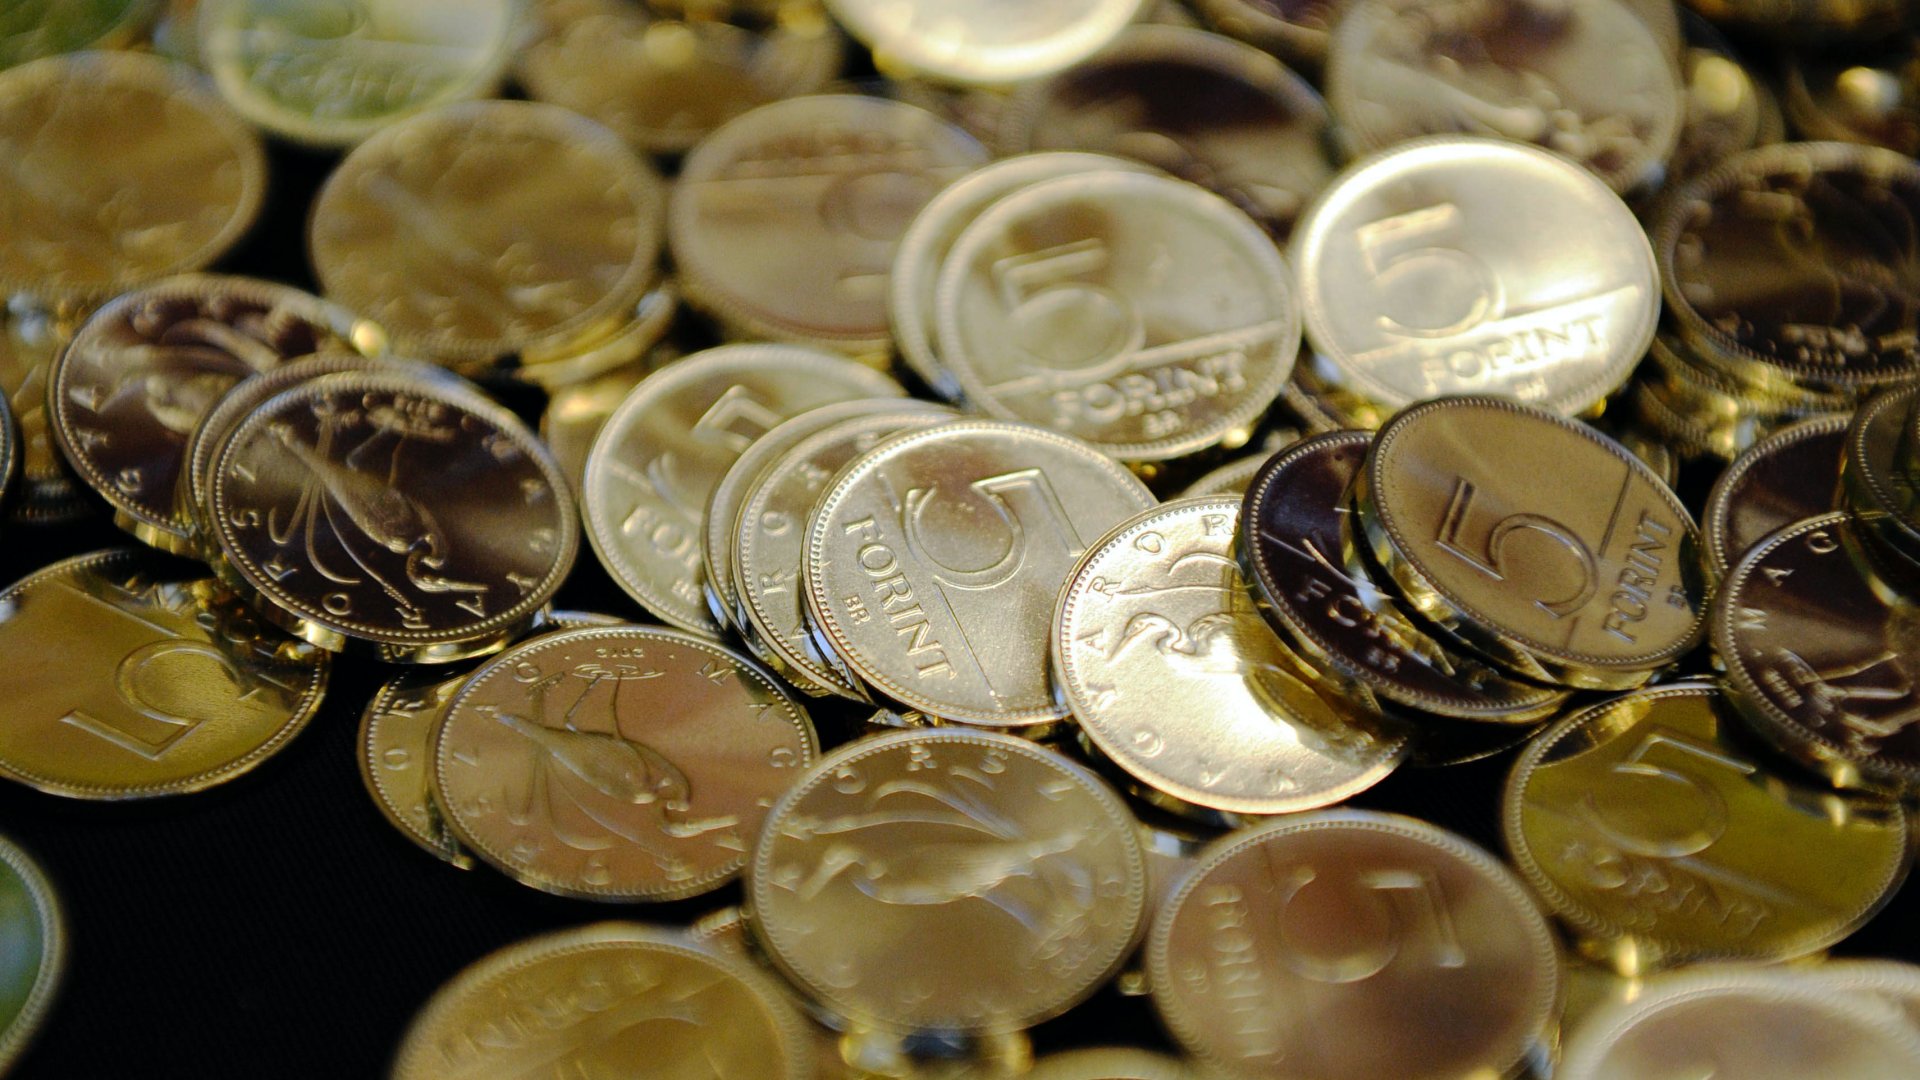 Új 5 forintos érméket bocsátottak ki